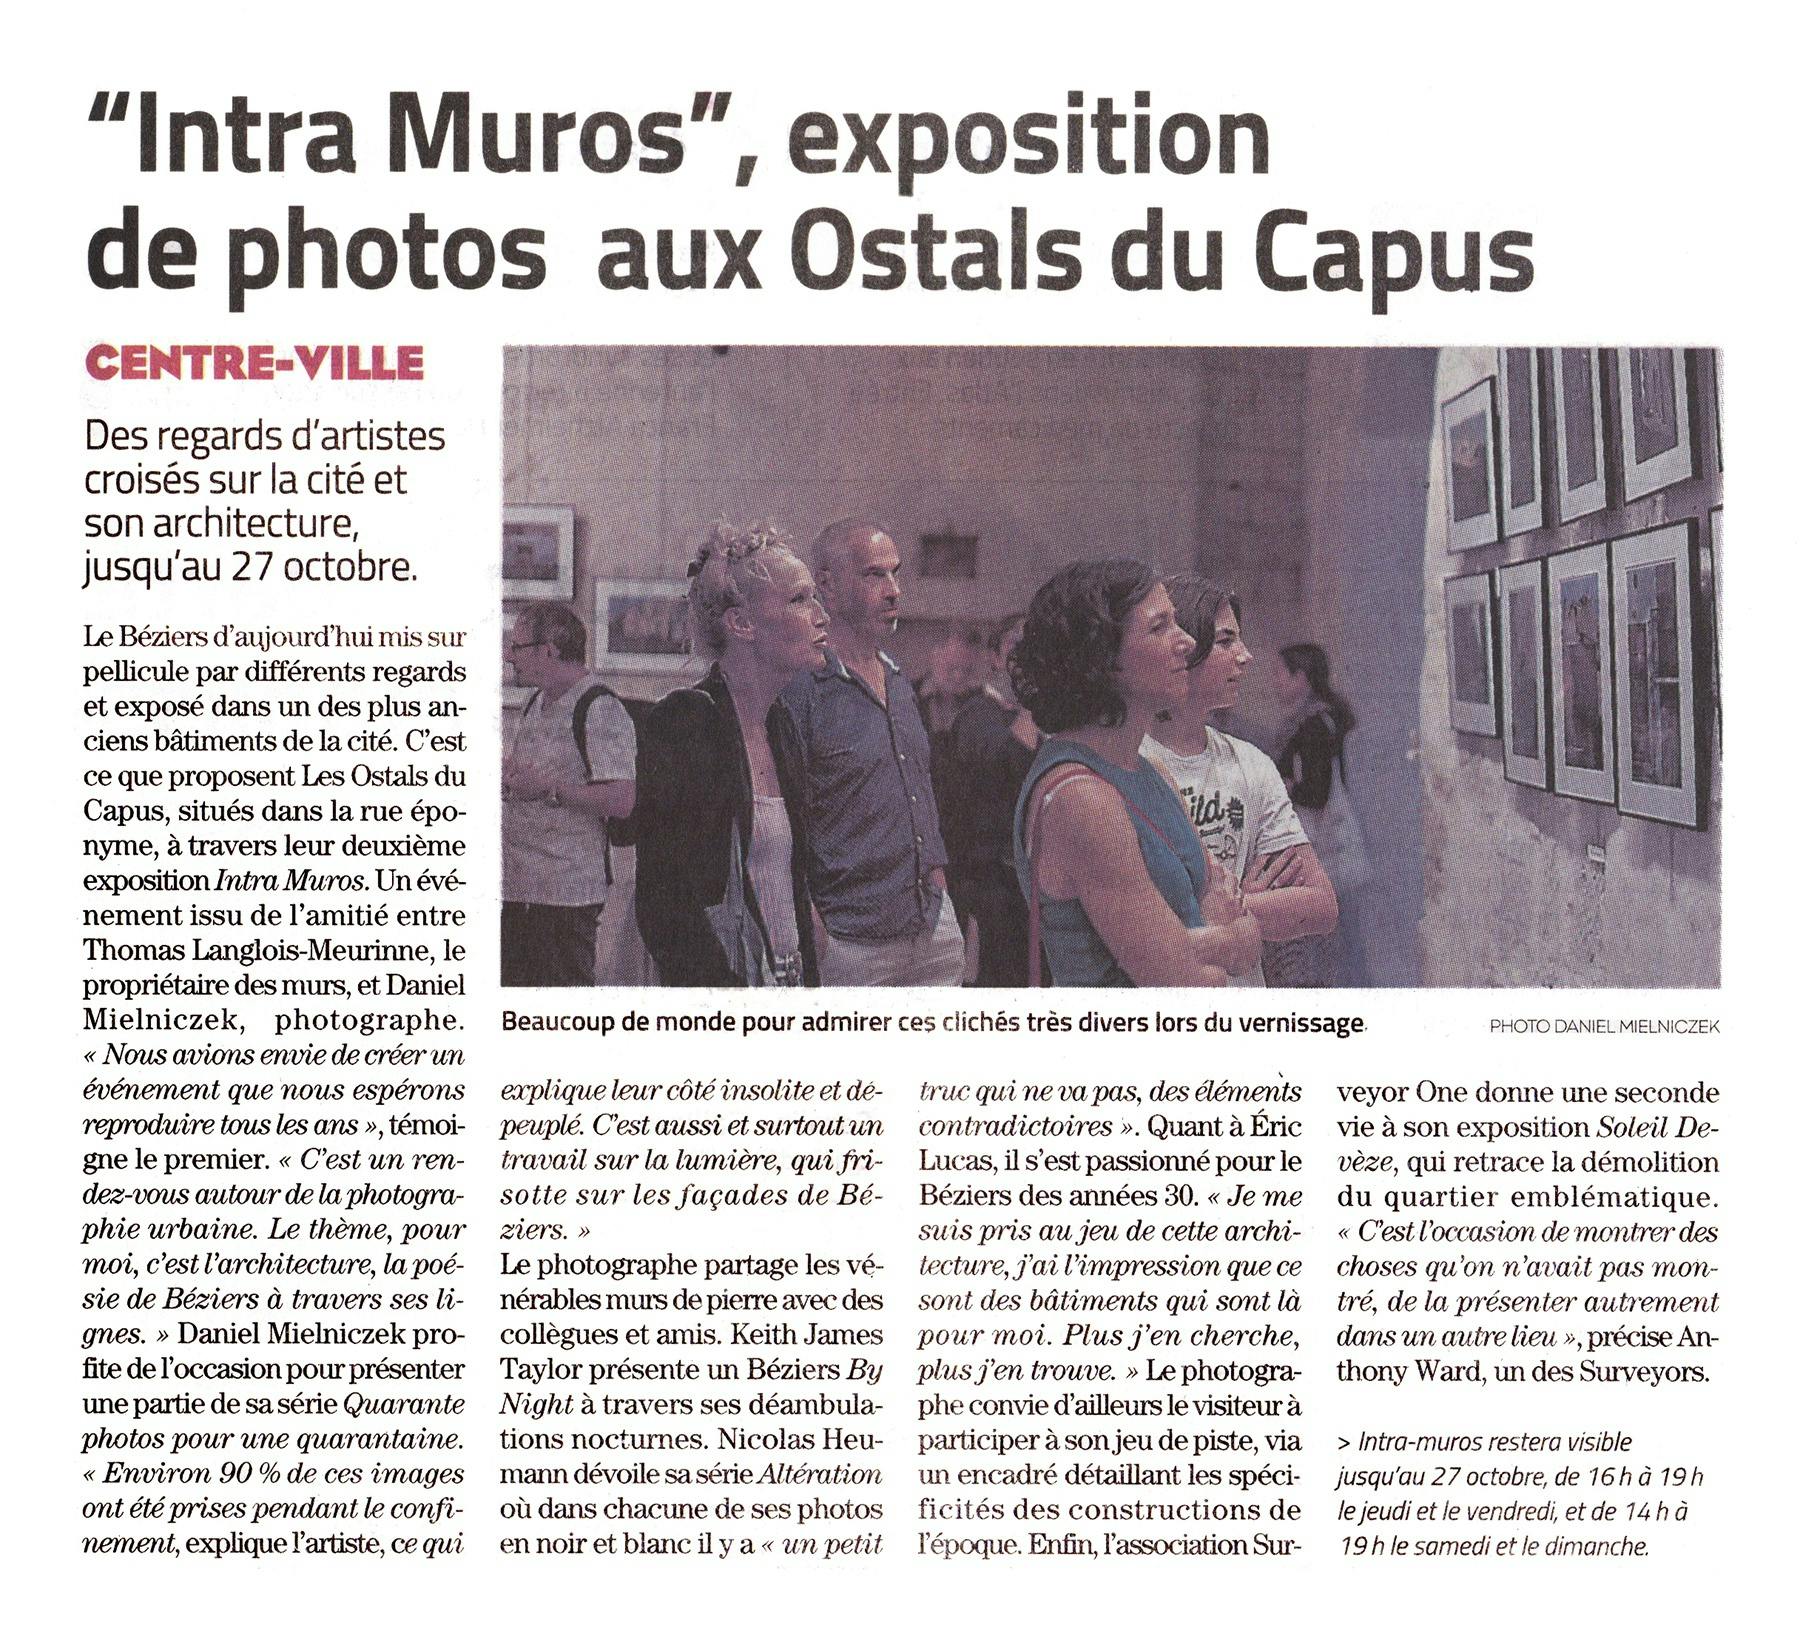 Intra Muros, exposition de photo aux Ostals